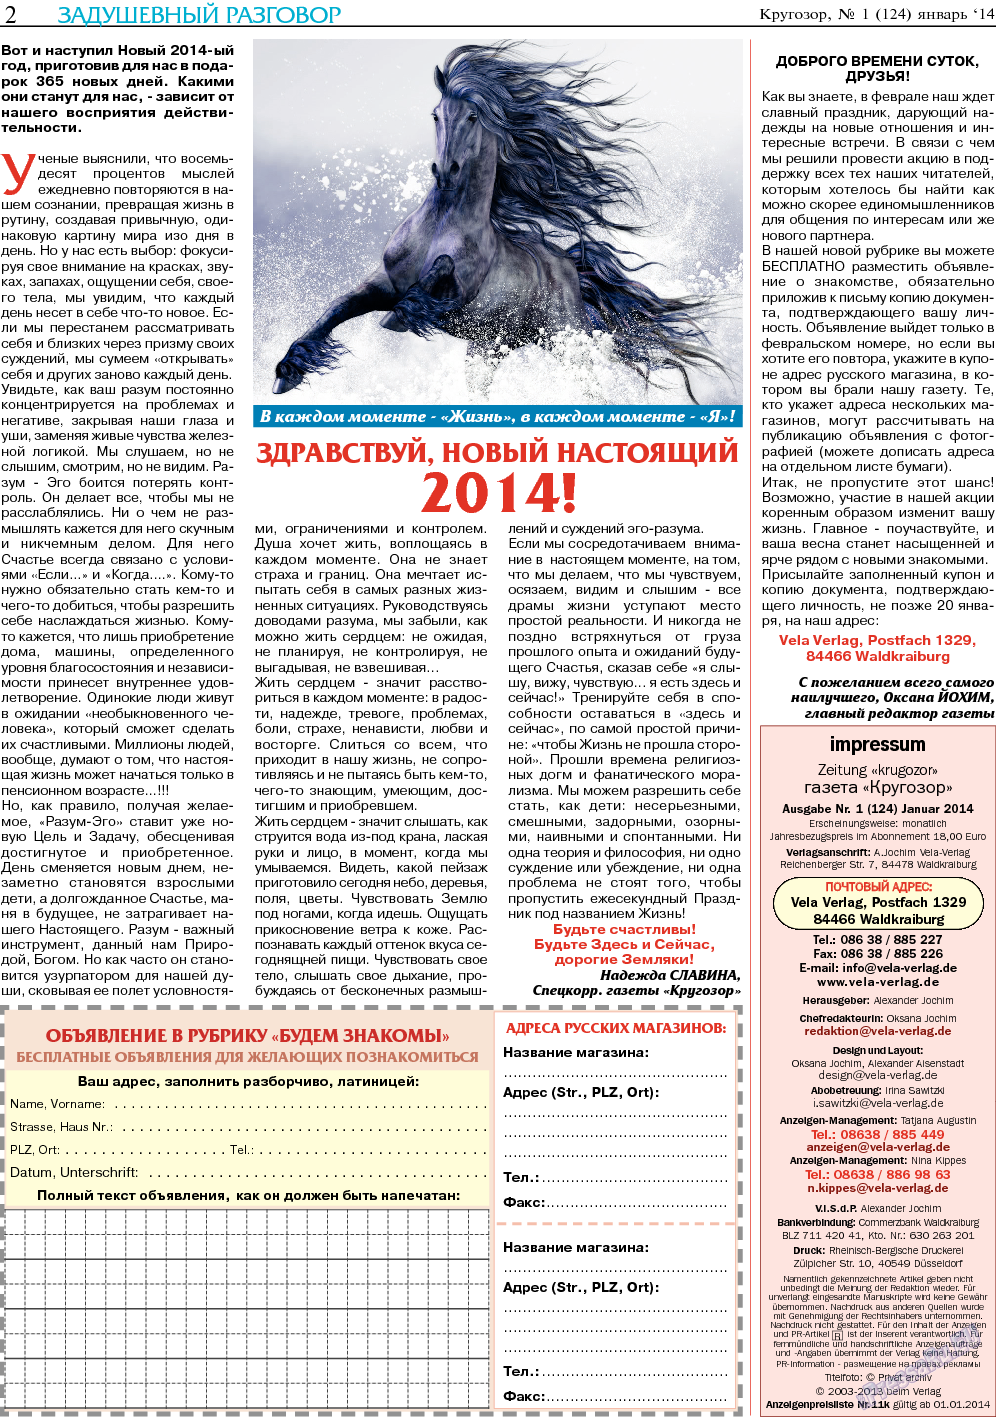 Кругозор, газета. 2014 №1 стр.2